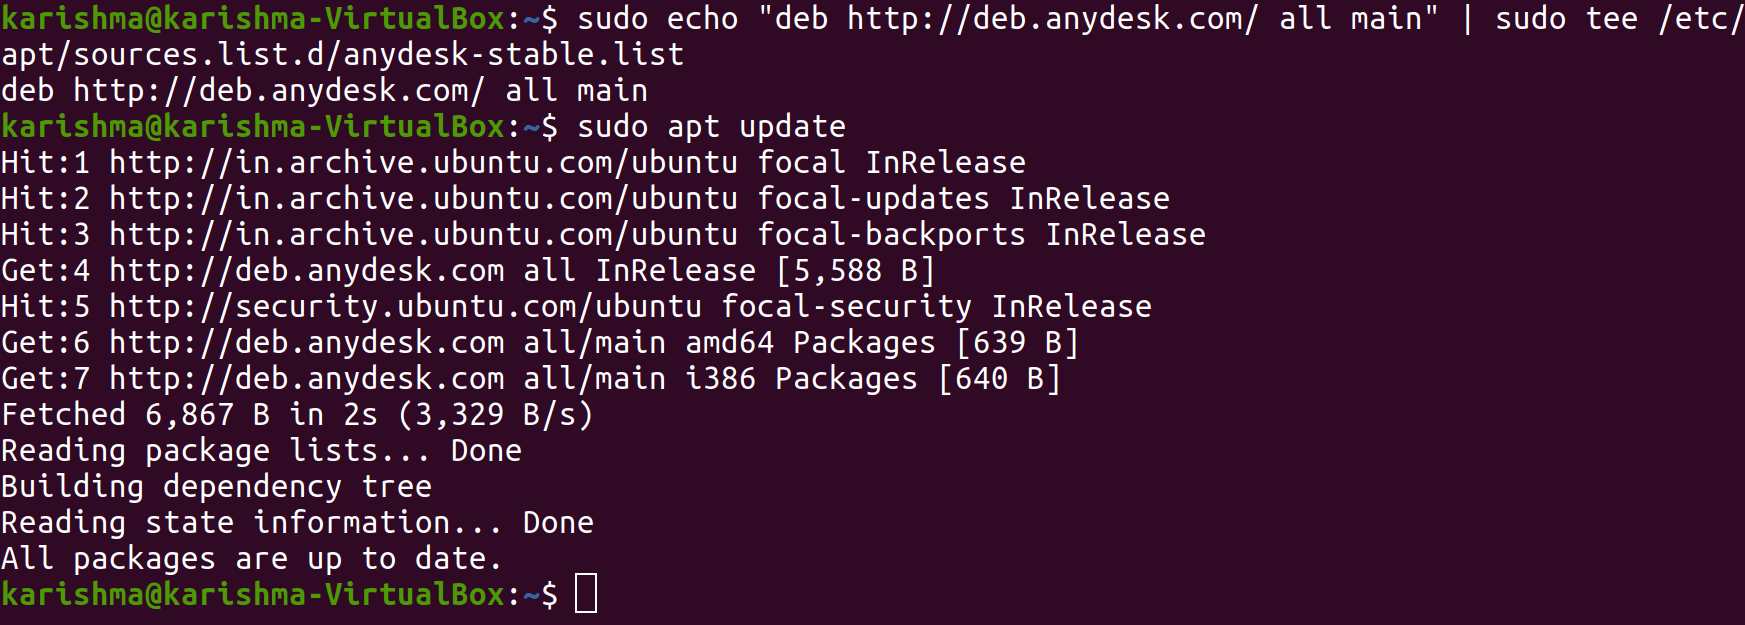 AnyDesk Ubuntu